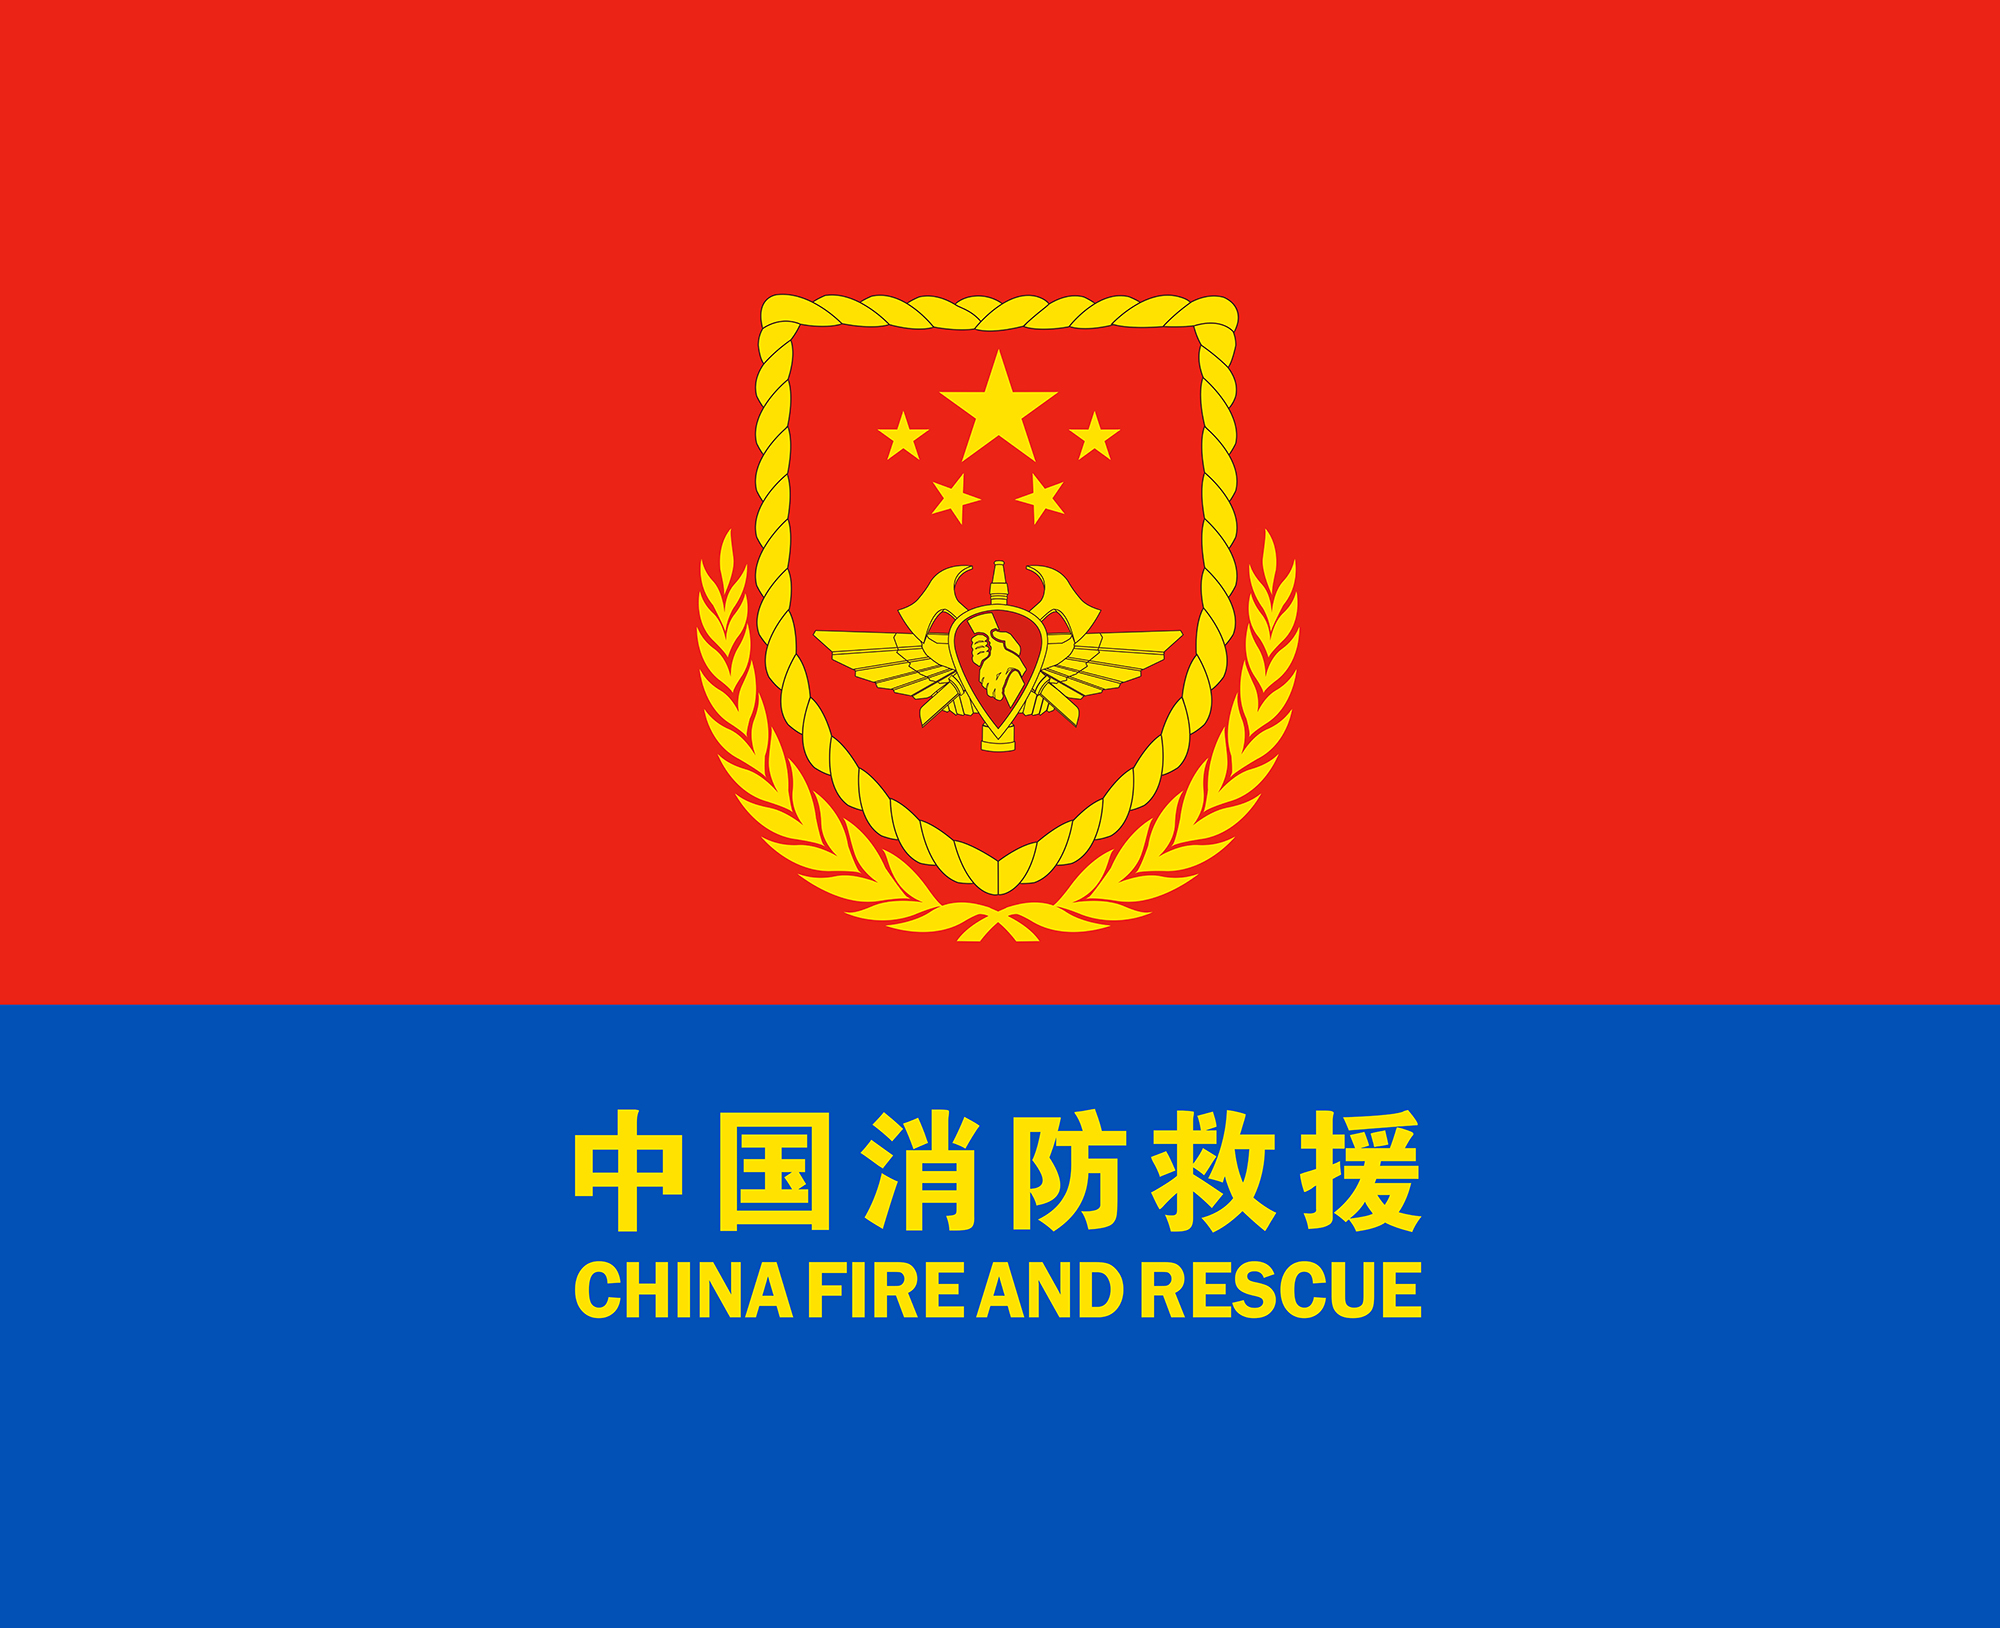 武警森林部队退出现役,成建制划归中华人民共和国应急管理部,组建国家